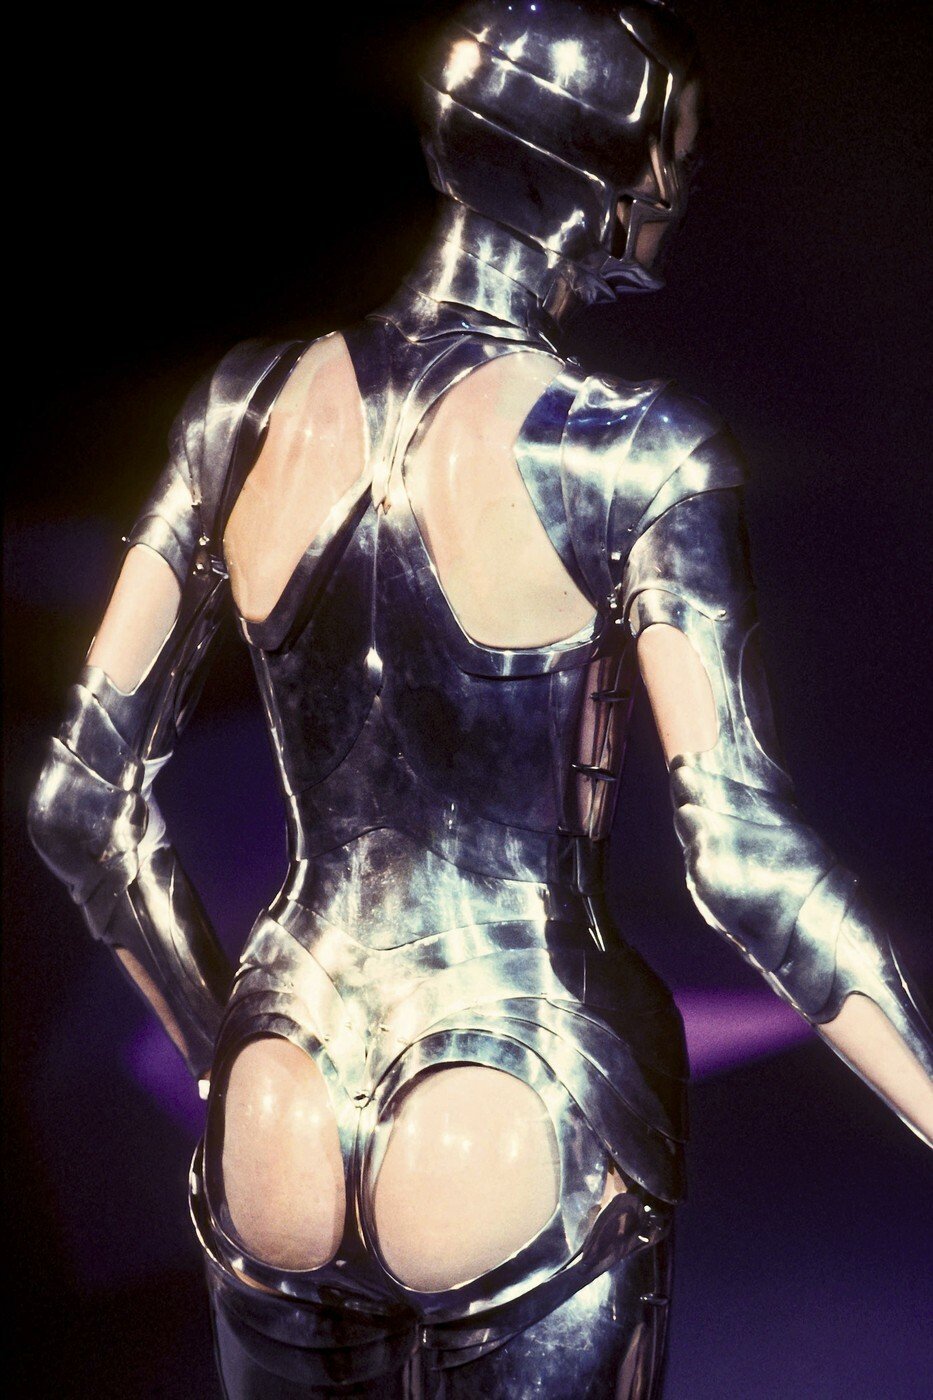 Robotický model v rámci Mugler Haute Couture kolekce v roce 1995.